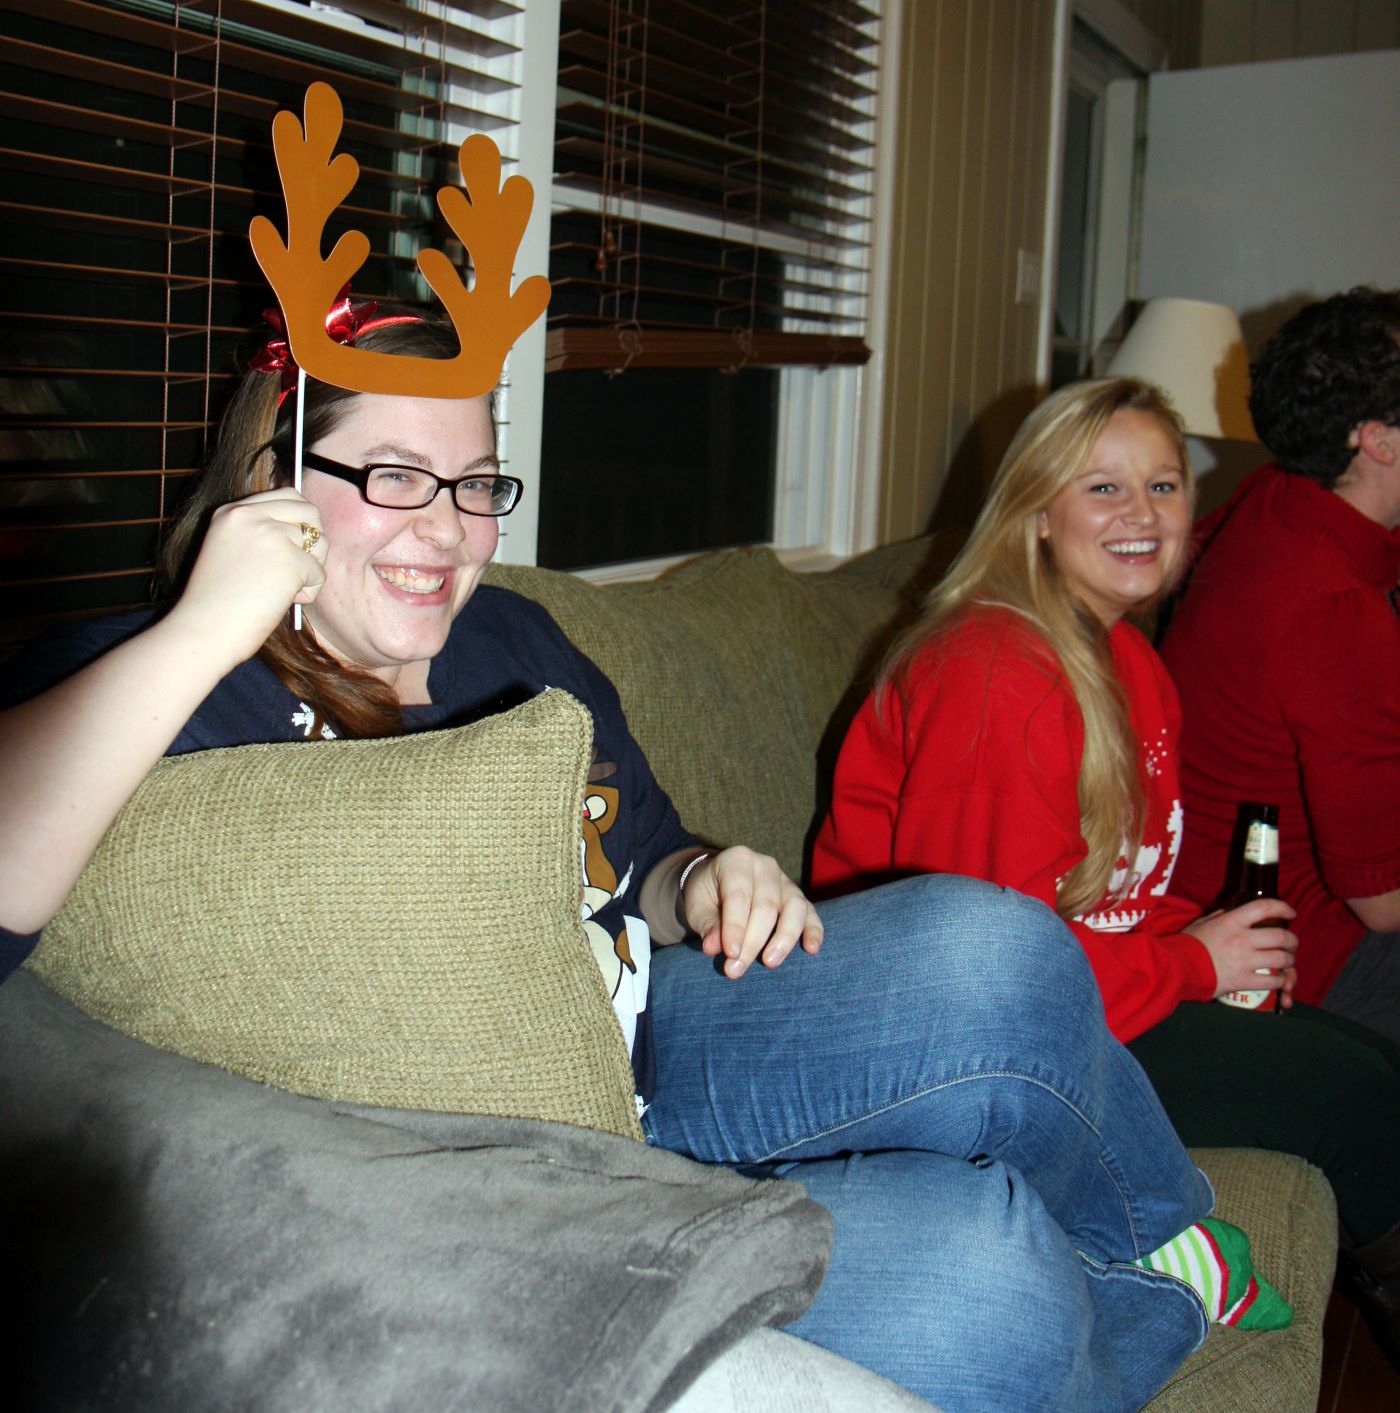 Julie with reindeer antlers and undergrad